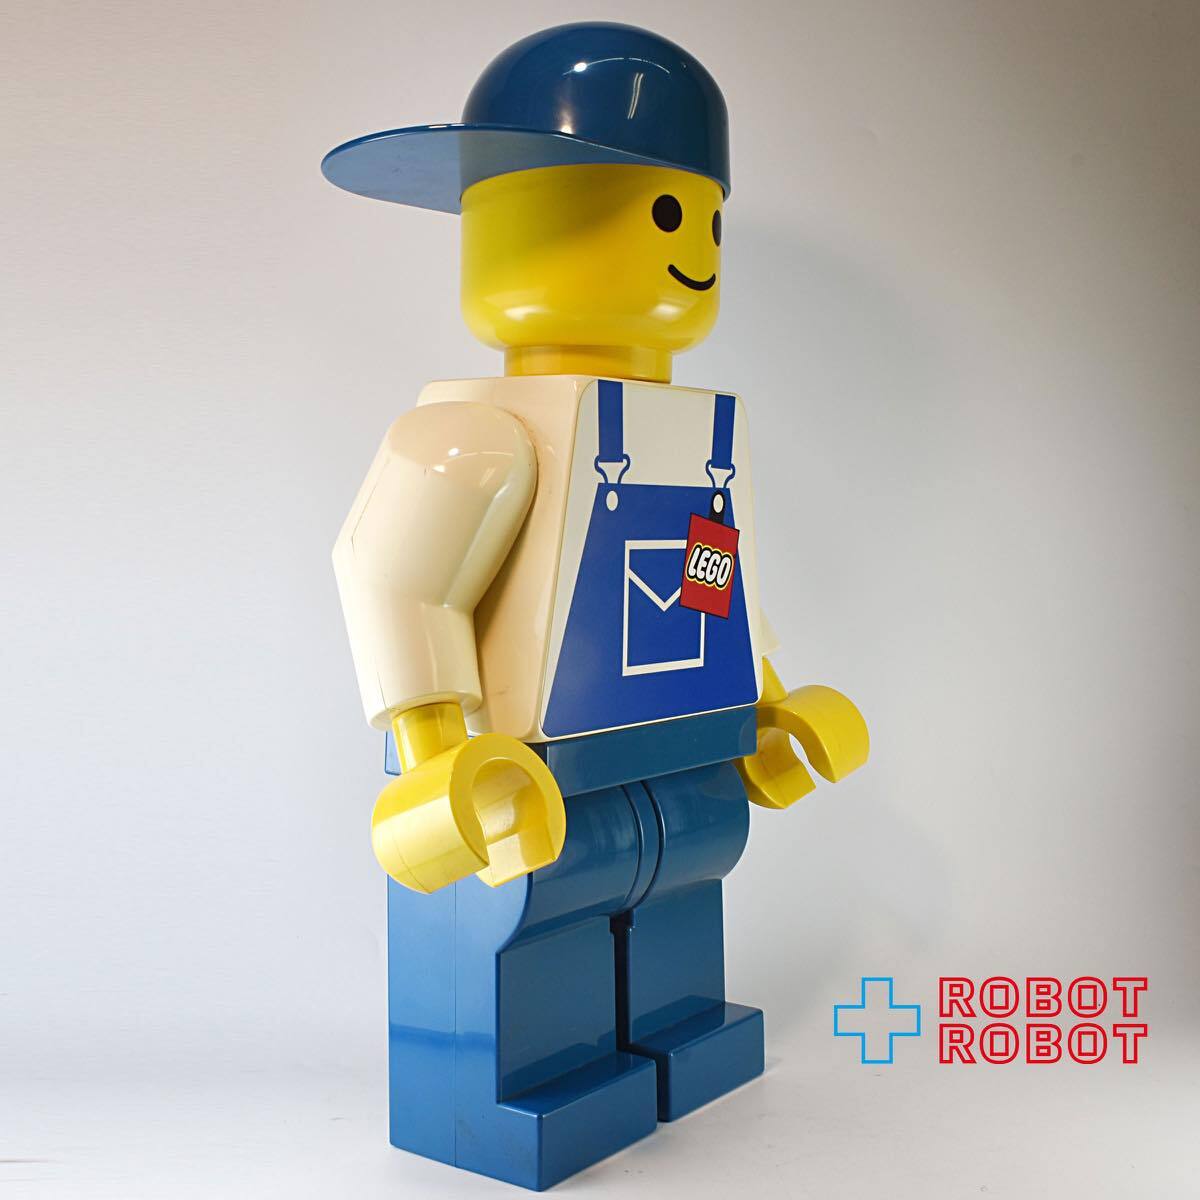 レゴ LEGO ジャンボフィグ エンジニア 男の子